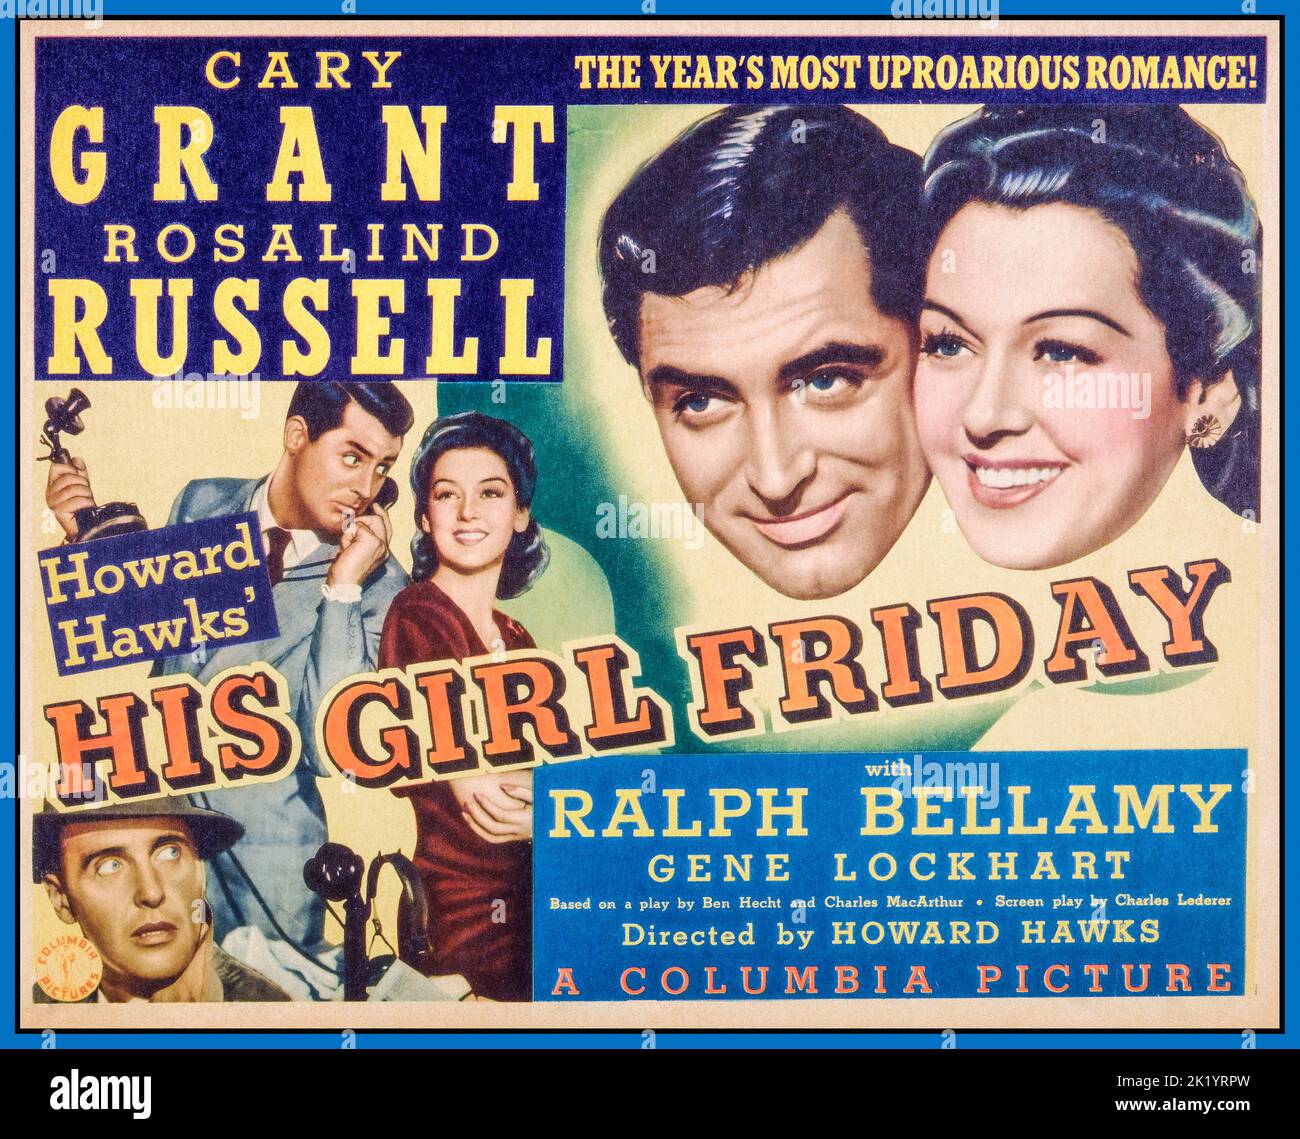 SA FILLE FRIDAY - film Poster pour 1940 Columbia film avec Cary Grant et Rosalind Russell - réalisé par Howard Hawks avec Ralph Bellamy, Gene Lockhart Banque D'Images